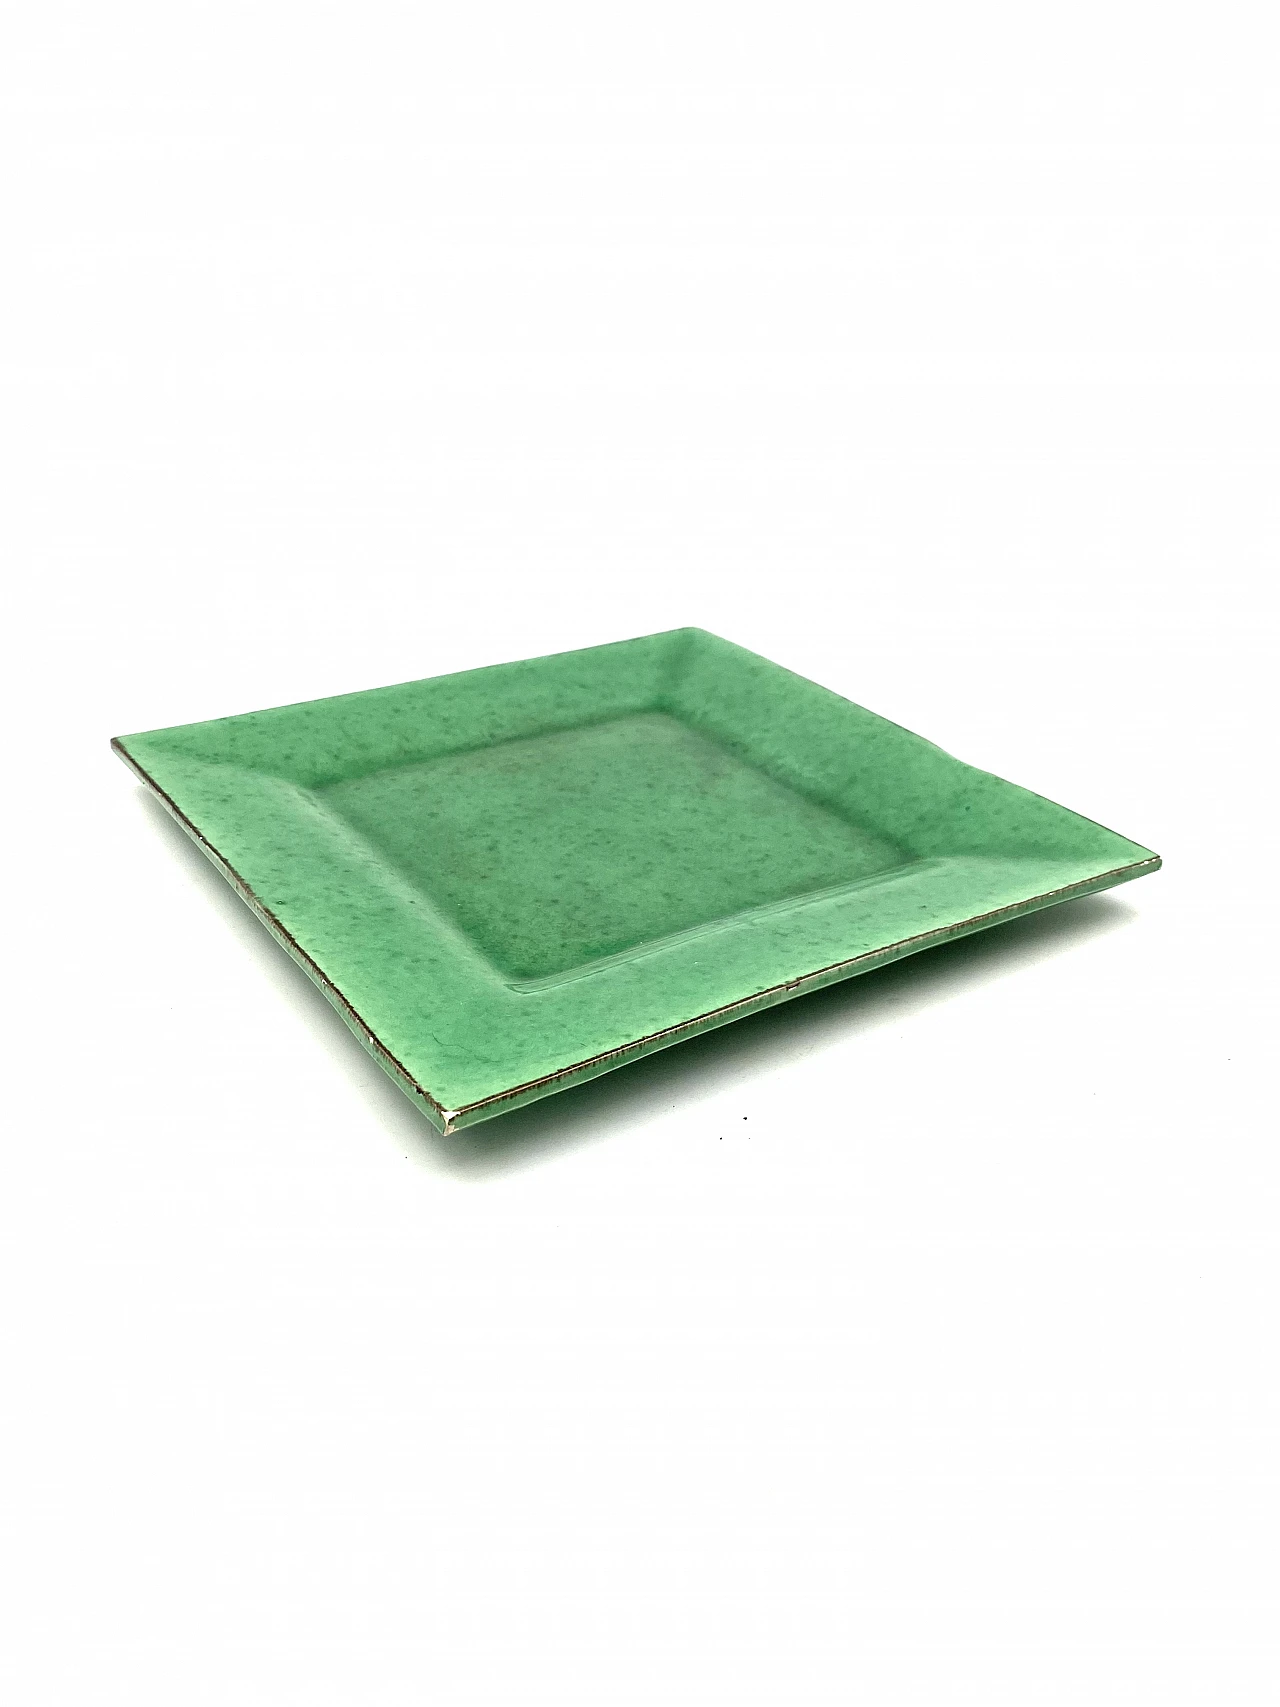 Vide poche in green glazed ceramic, 1960s 1